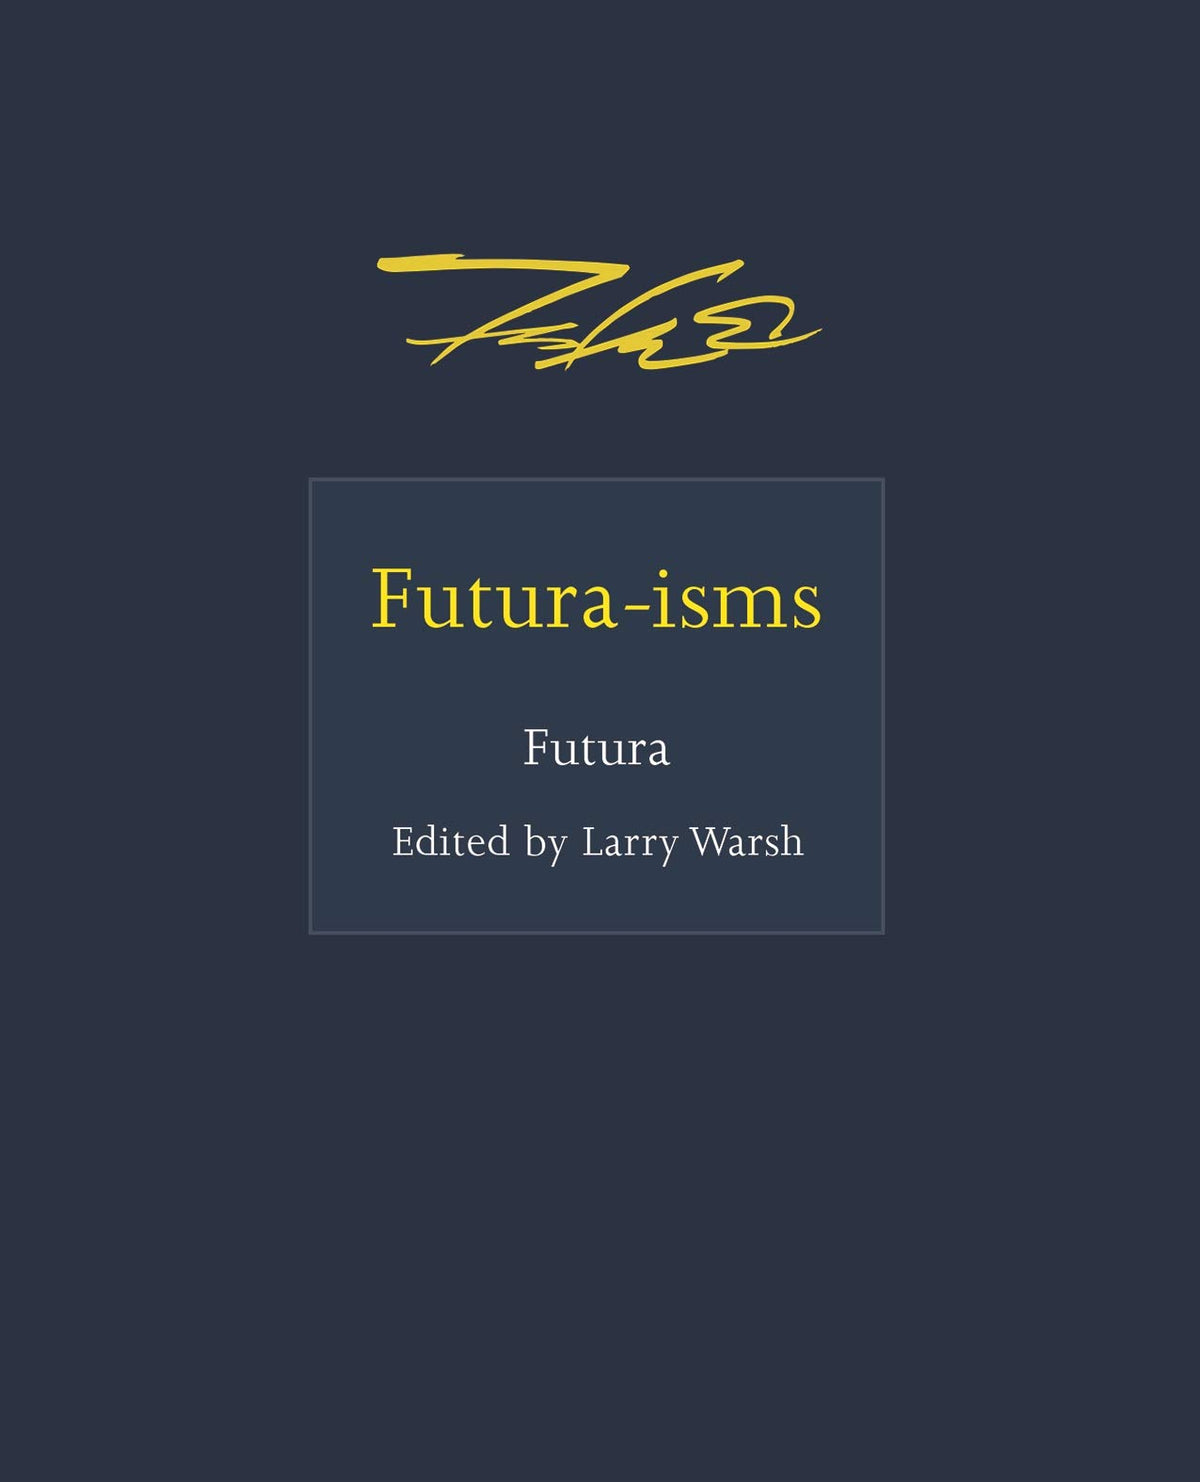 Futura-isms: 5